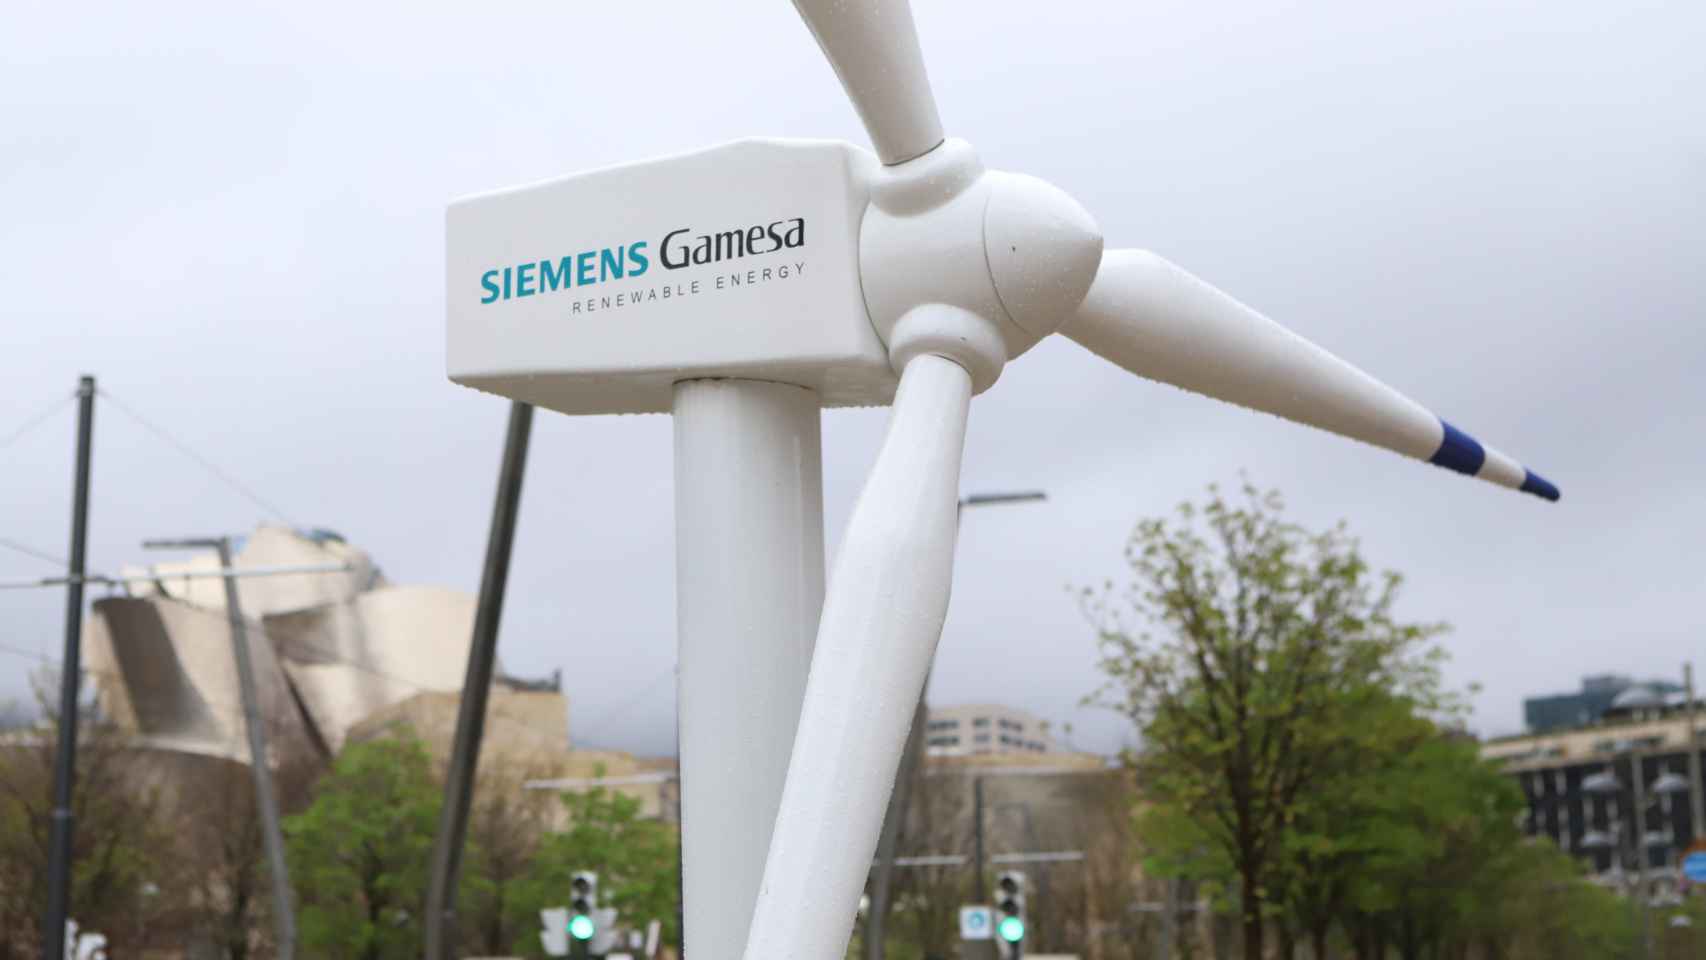 Aerogenerador de Siemens Gamesa en Bilbao con motivo de la Junta de Accionistas de 2021 / Siemens Gamesa